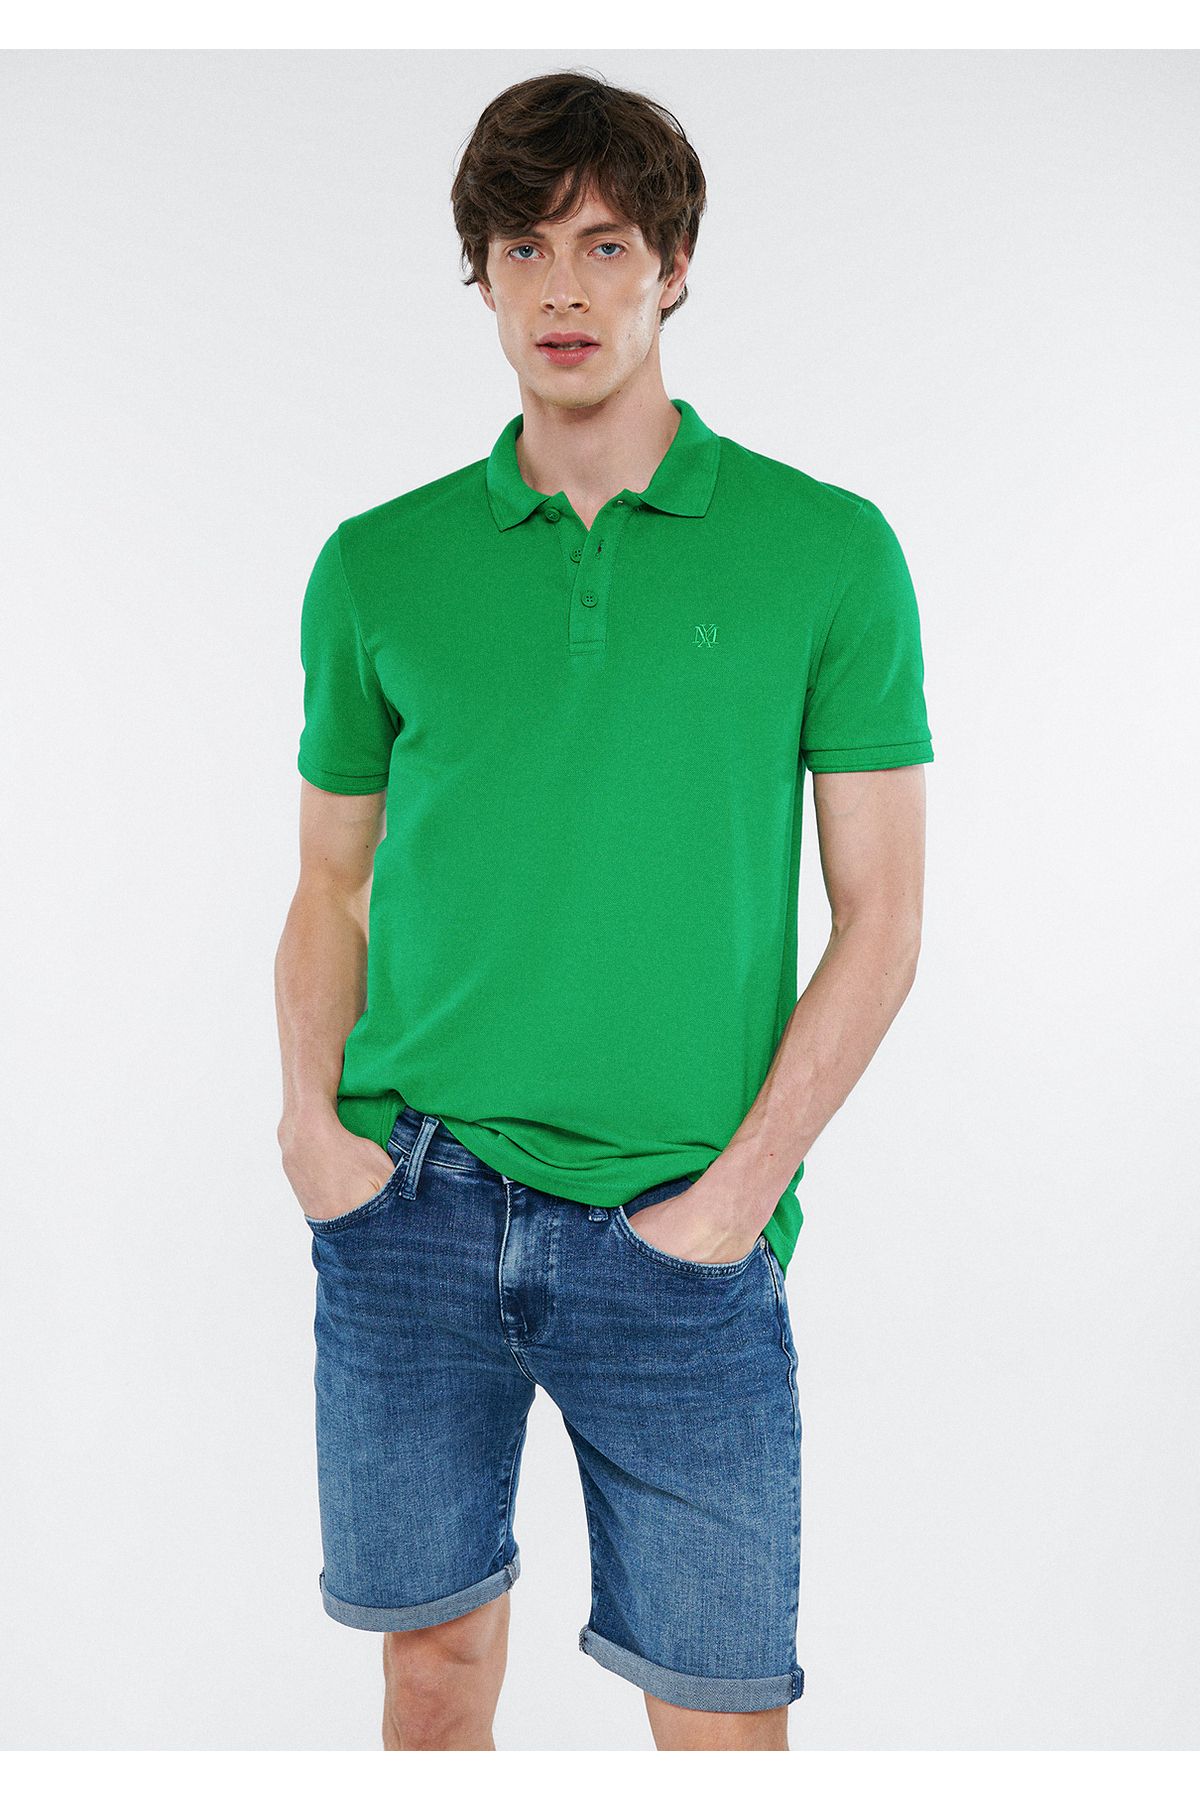 Mavi Yeşil Polo Tişört Slim Fit / Dar Kesim 064946-71754